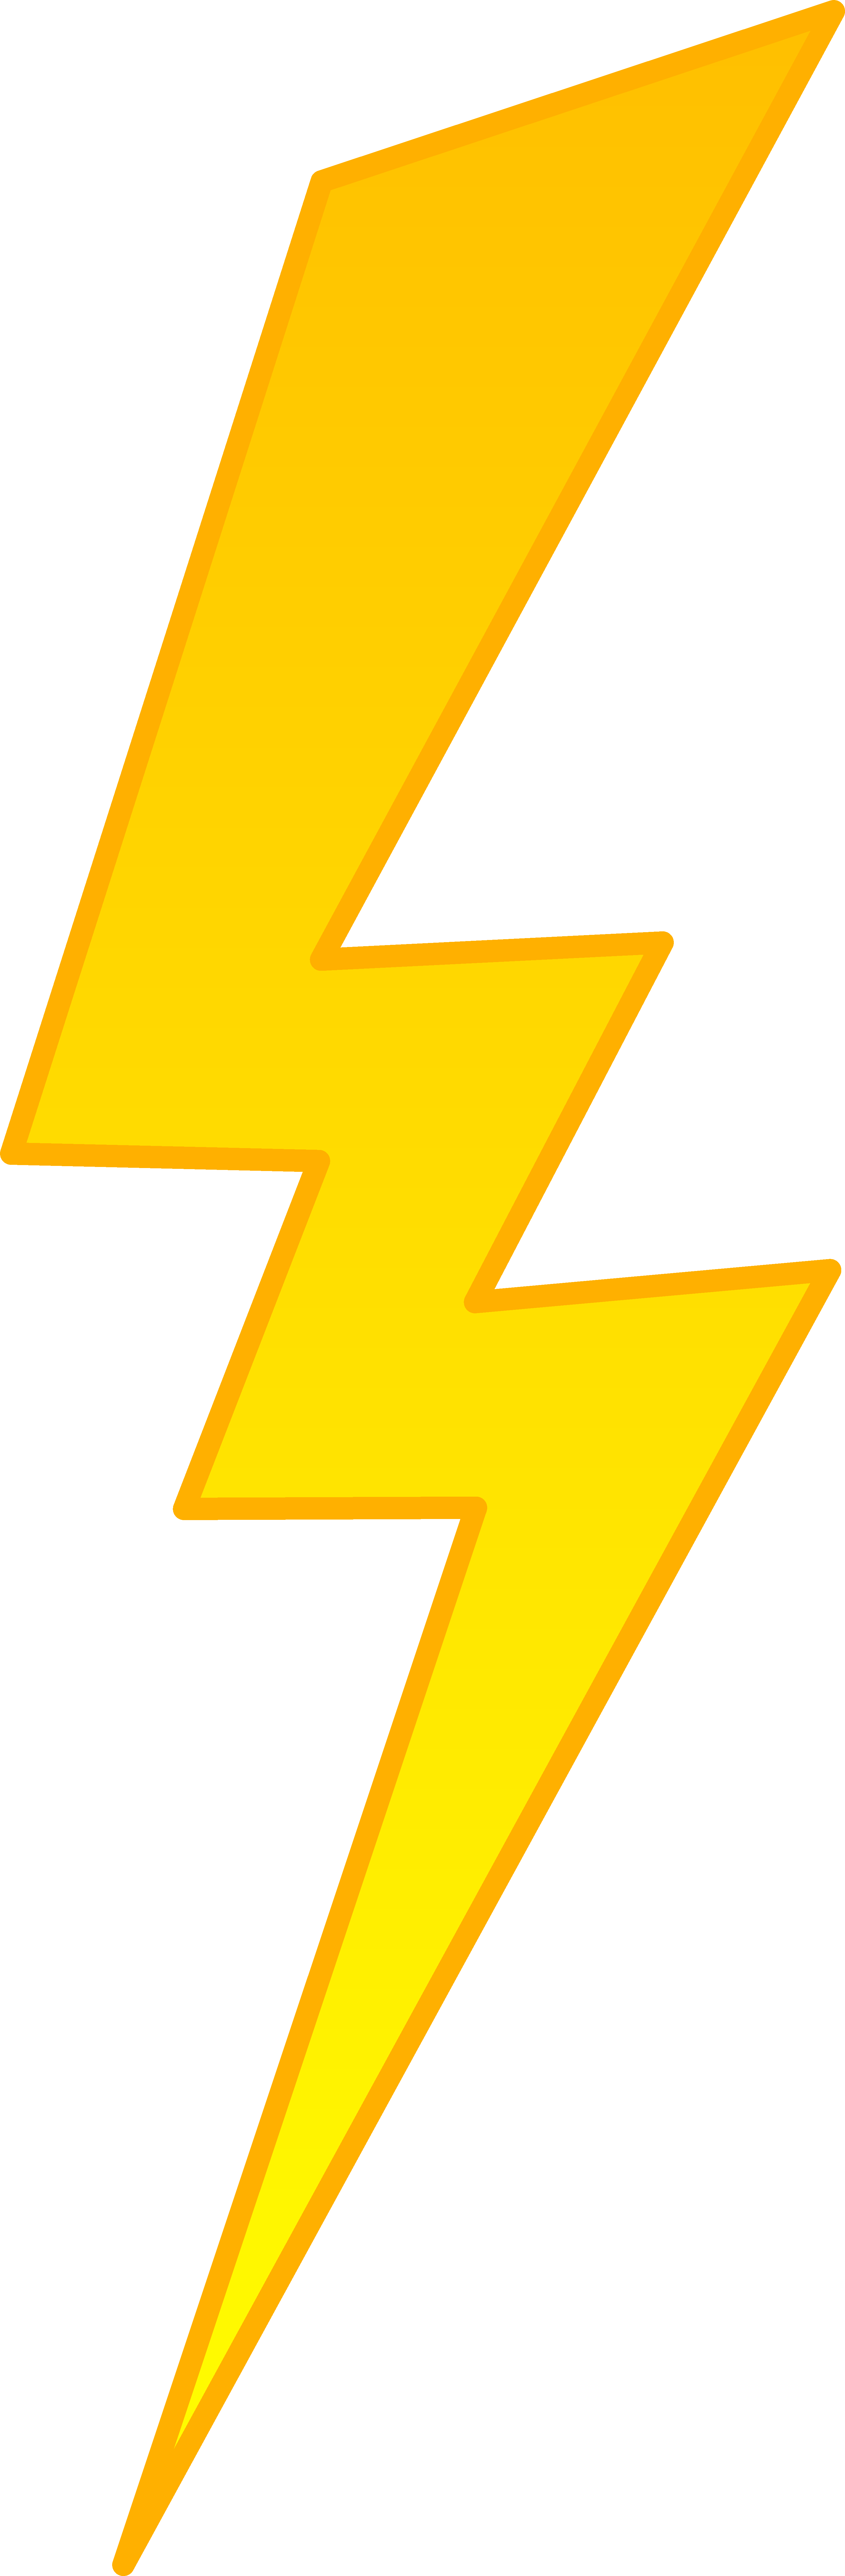 Golden Lightning Bolt Symbol Free Download Clipart